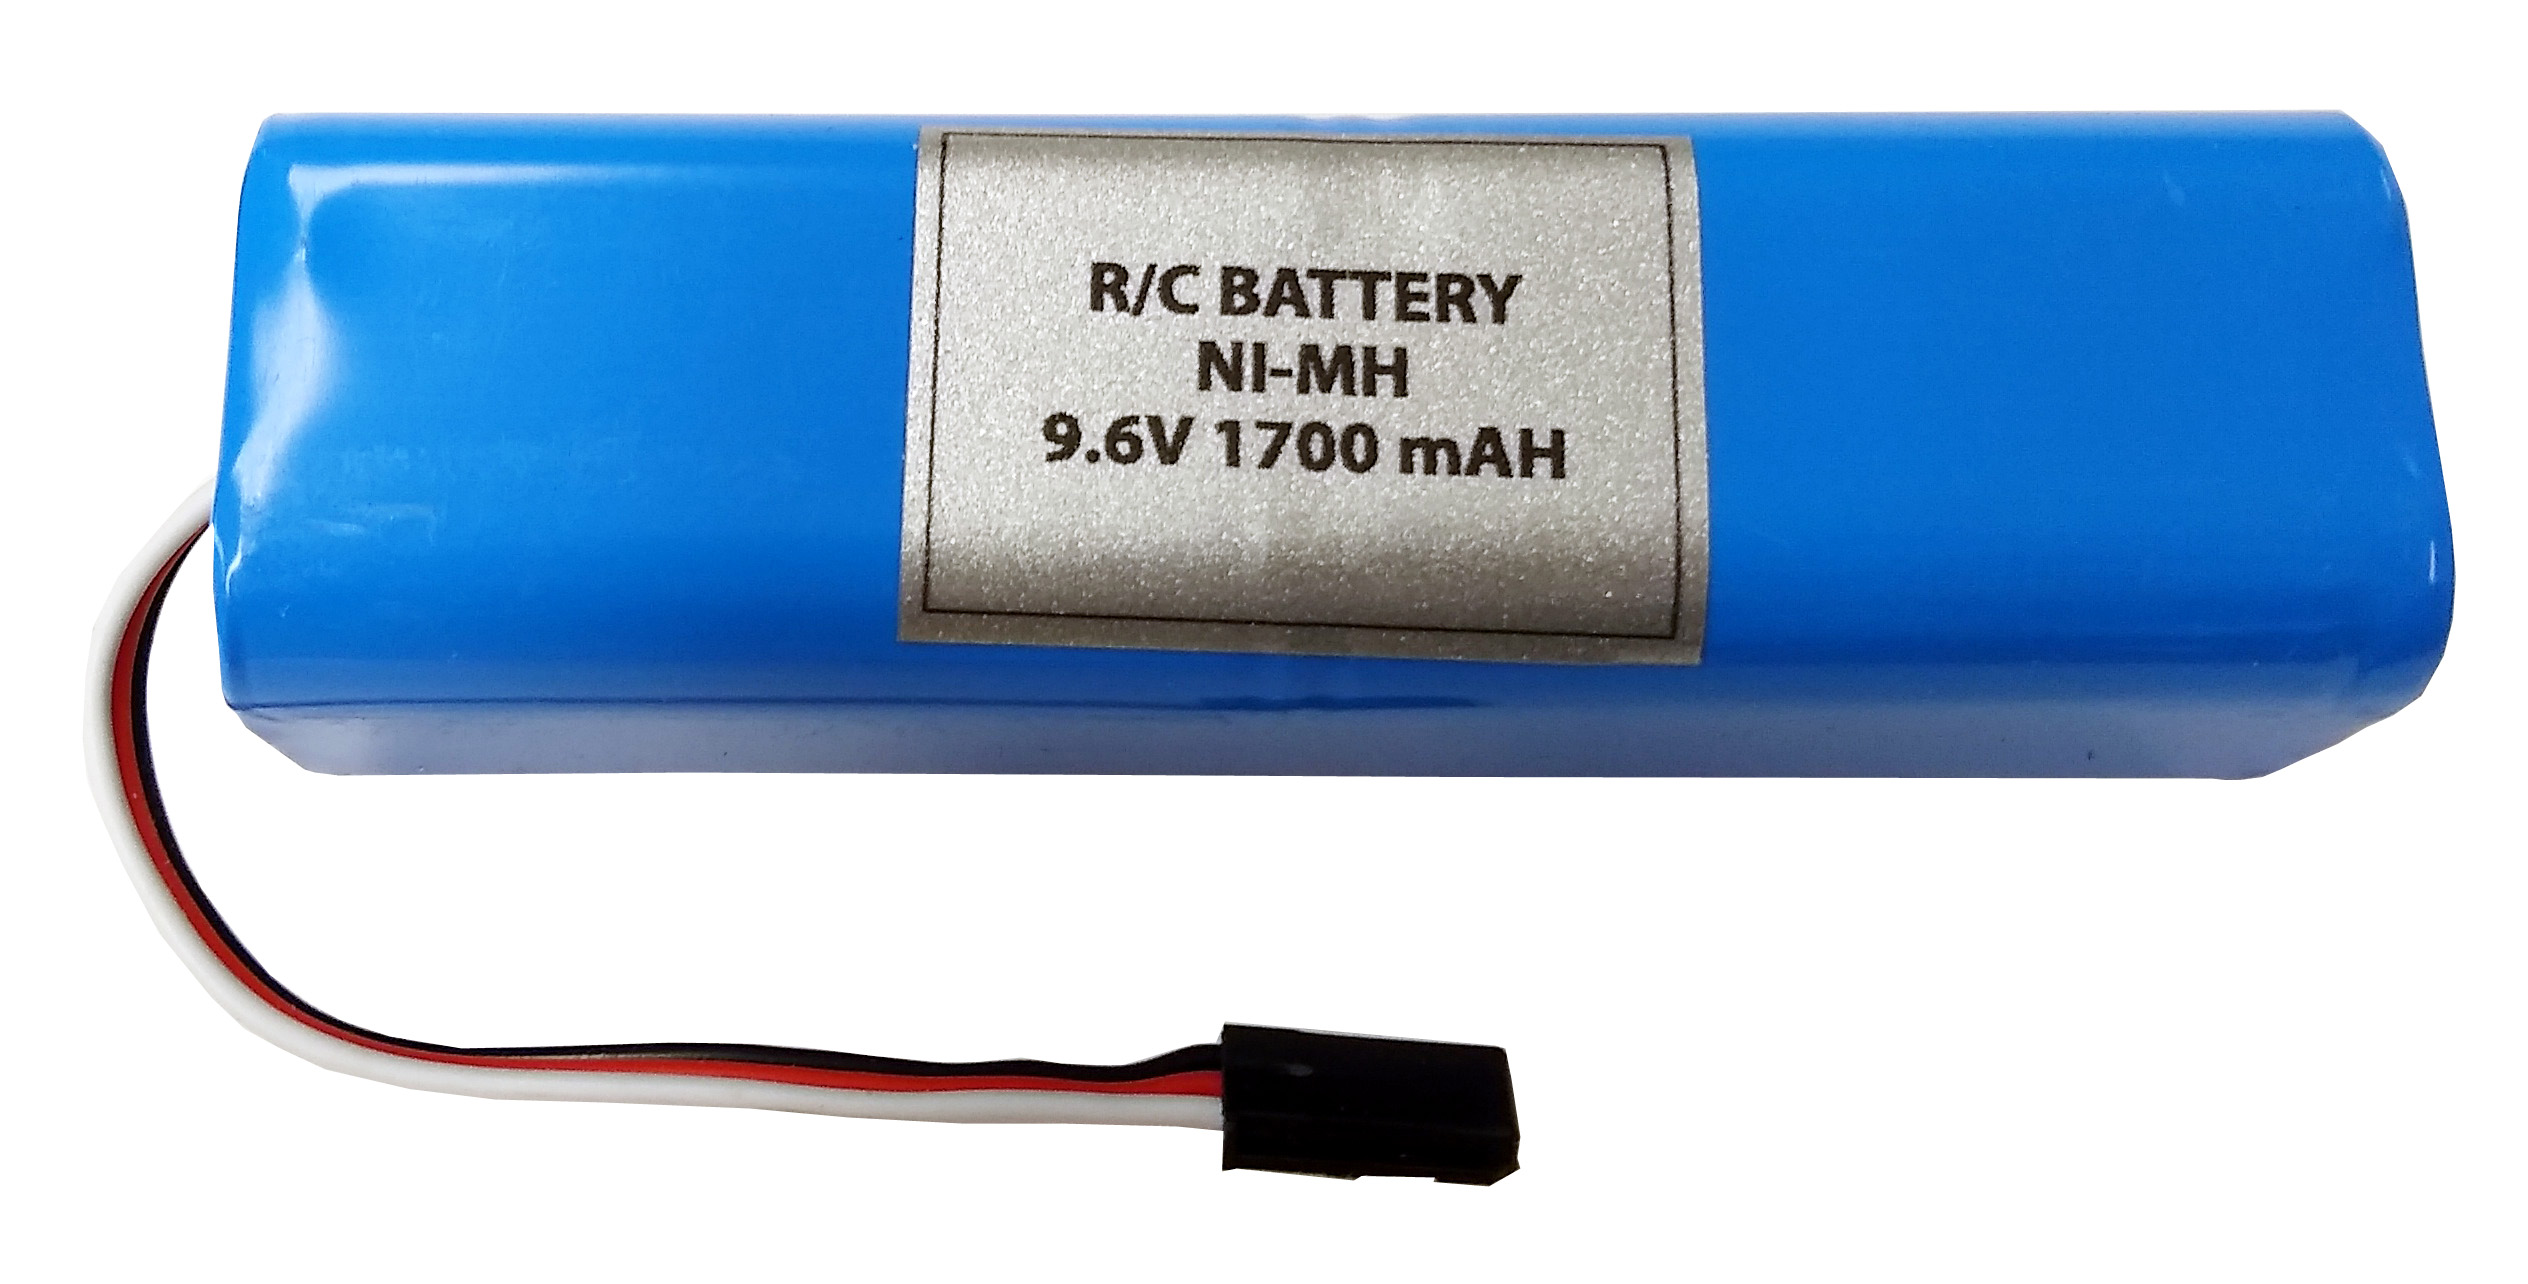 Chargeur de piles NiMH - R03, R06, R14, R20 et 9V - Indicateur de charge LCD